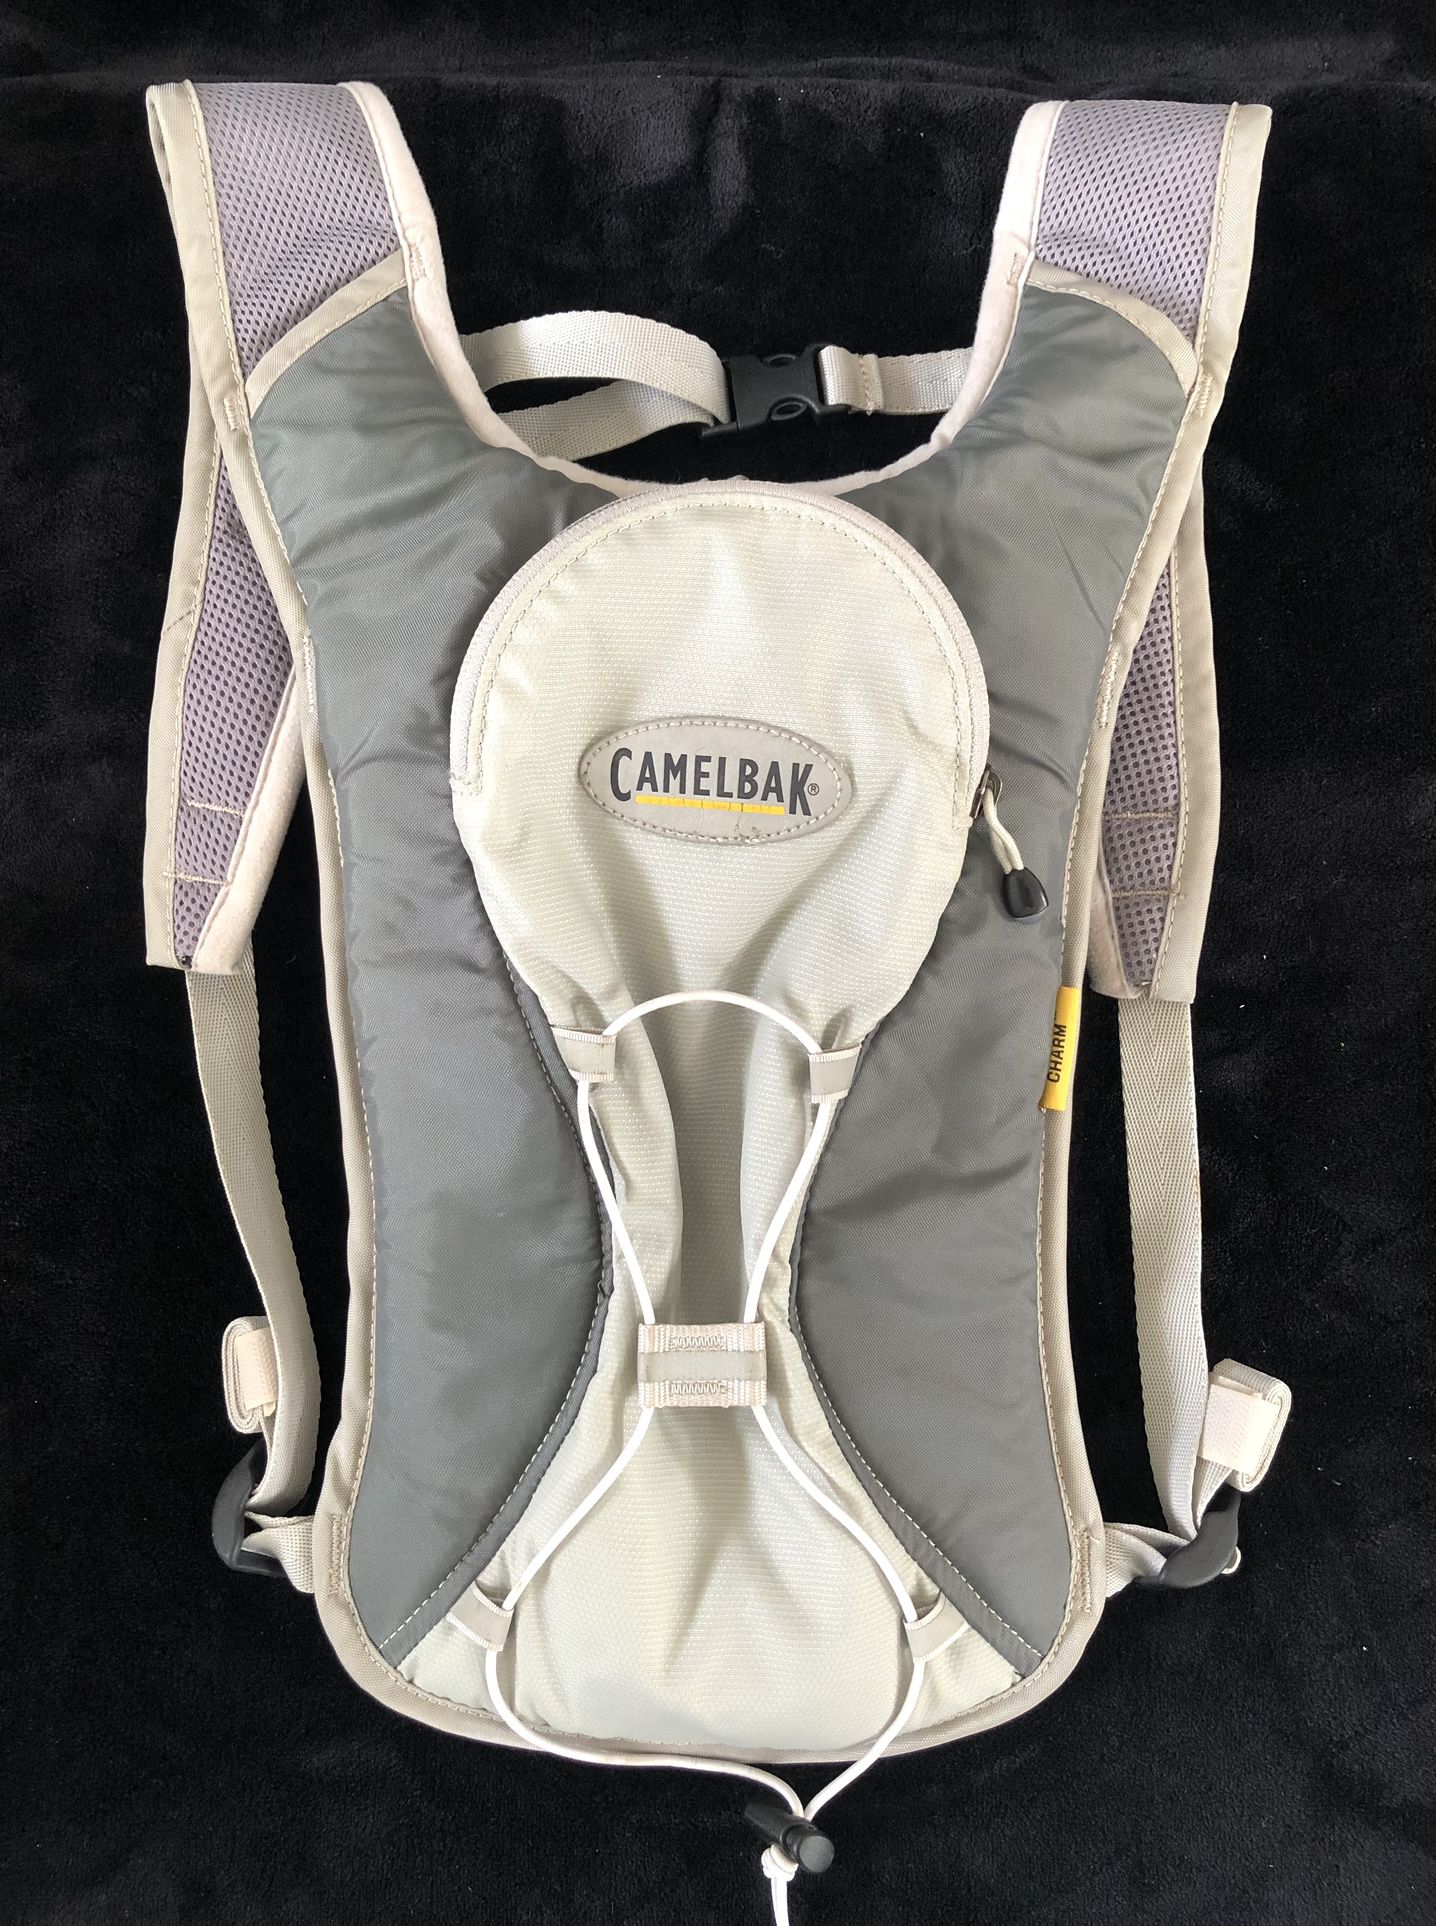 CAMELBAK Women’s Hydration Backpack / CAMELBAK CHARM Hydration Backpack Biking Sports Hiking Camping